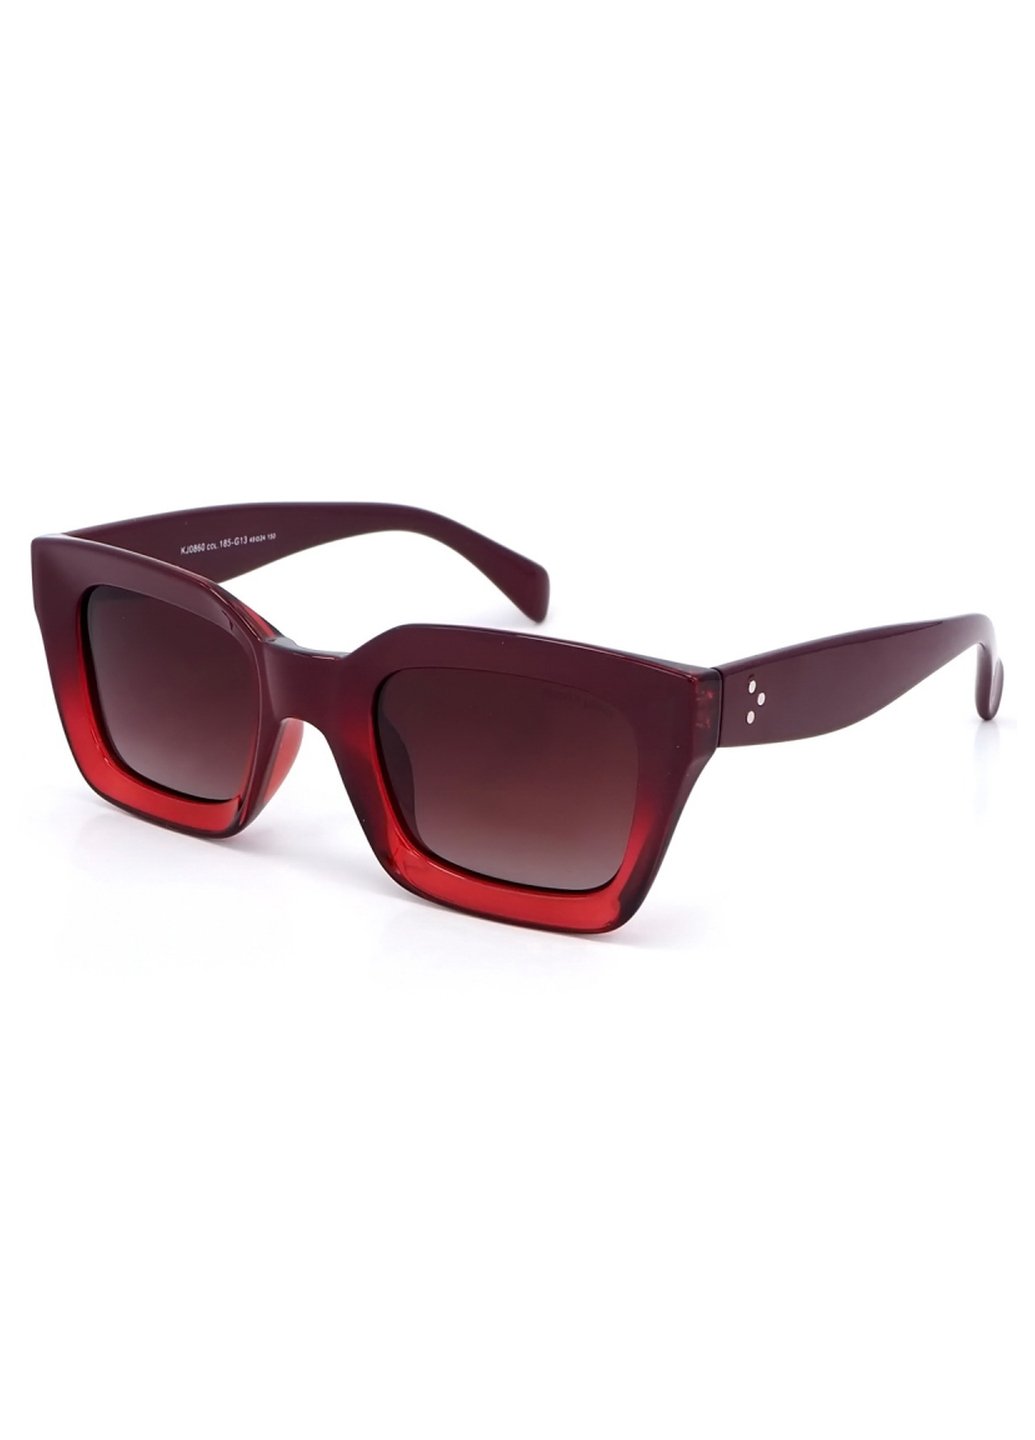 Купить Женские солнцезащитные очки Katrin Jones с поляризацией KJ0860 180045 - Бордовый в интернет-магазине